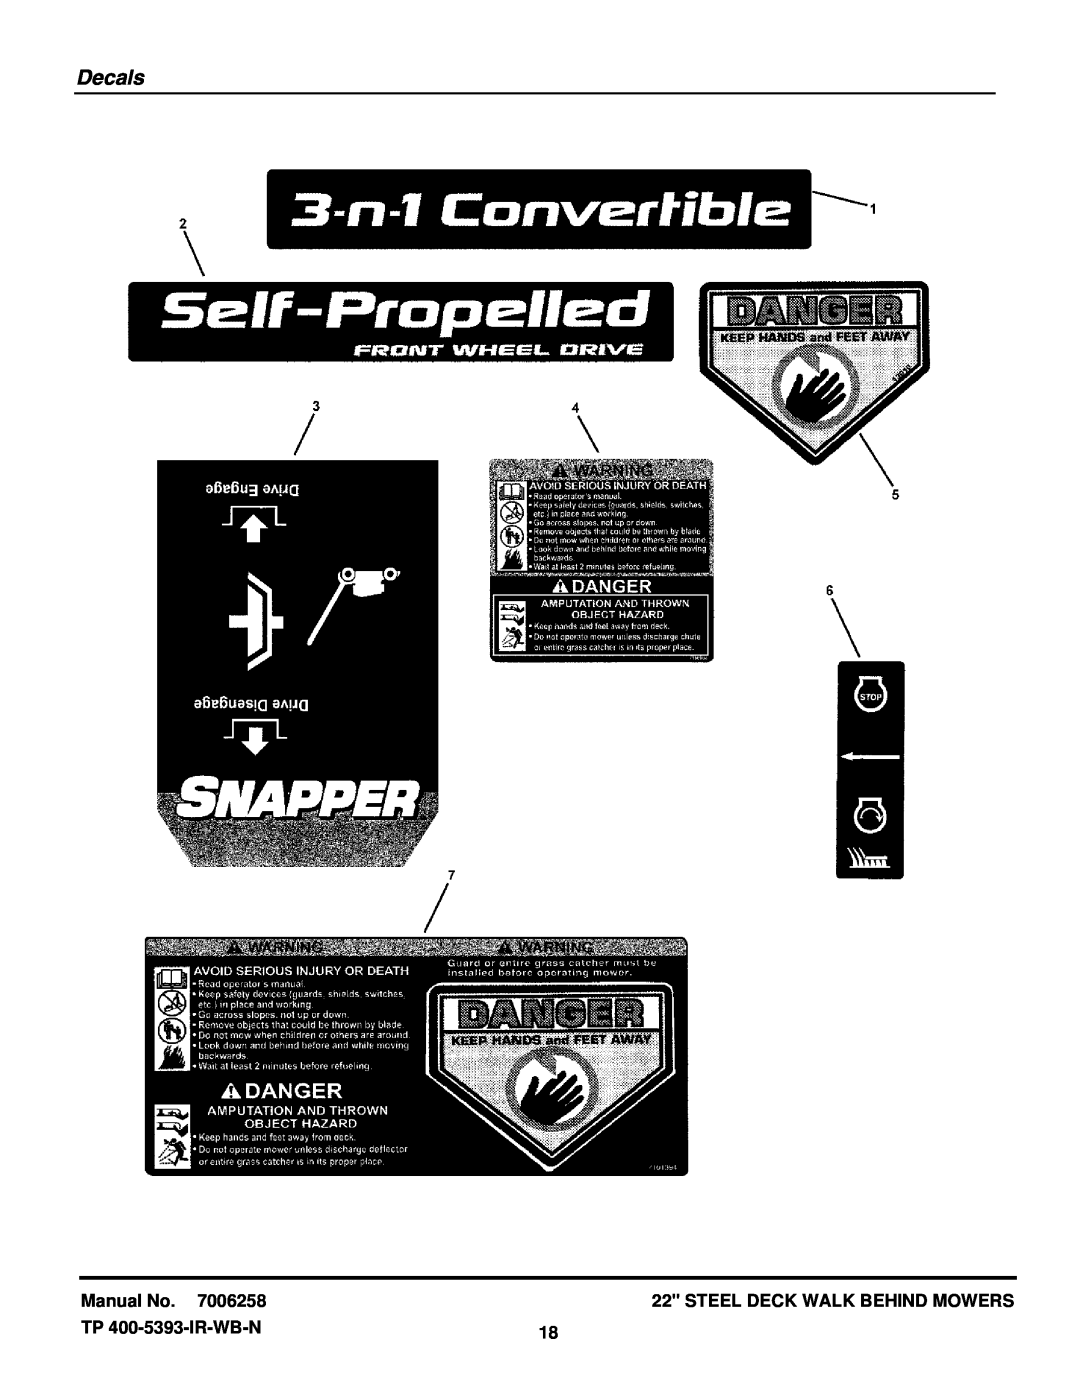 Snapper NS2265 manual Decals, Manual No, Steel Deck Walk Behind Mowers, TP 400-5393-IR-WB-N 